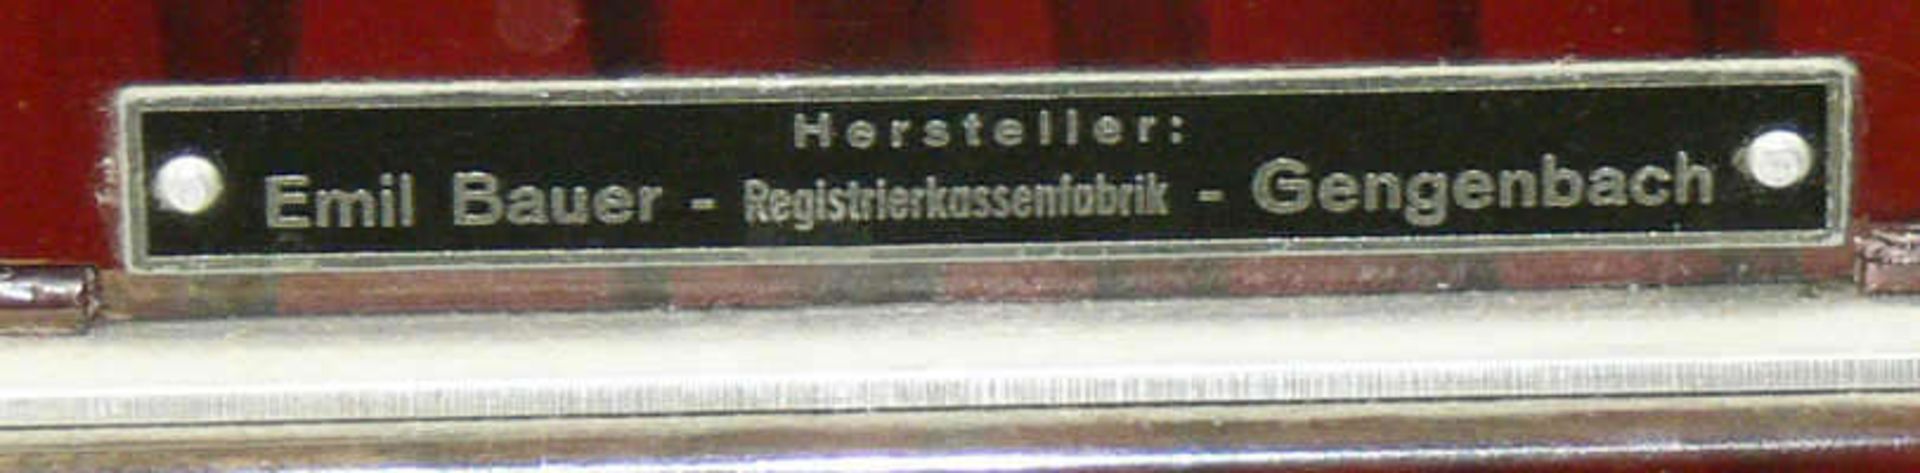 Hannovera Registrierkasse. Hersteller: Emil Bauer Registrierkassenfabrik Gengenbach. Hannovera - Bild 4 aus 4